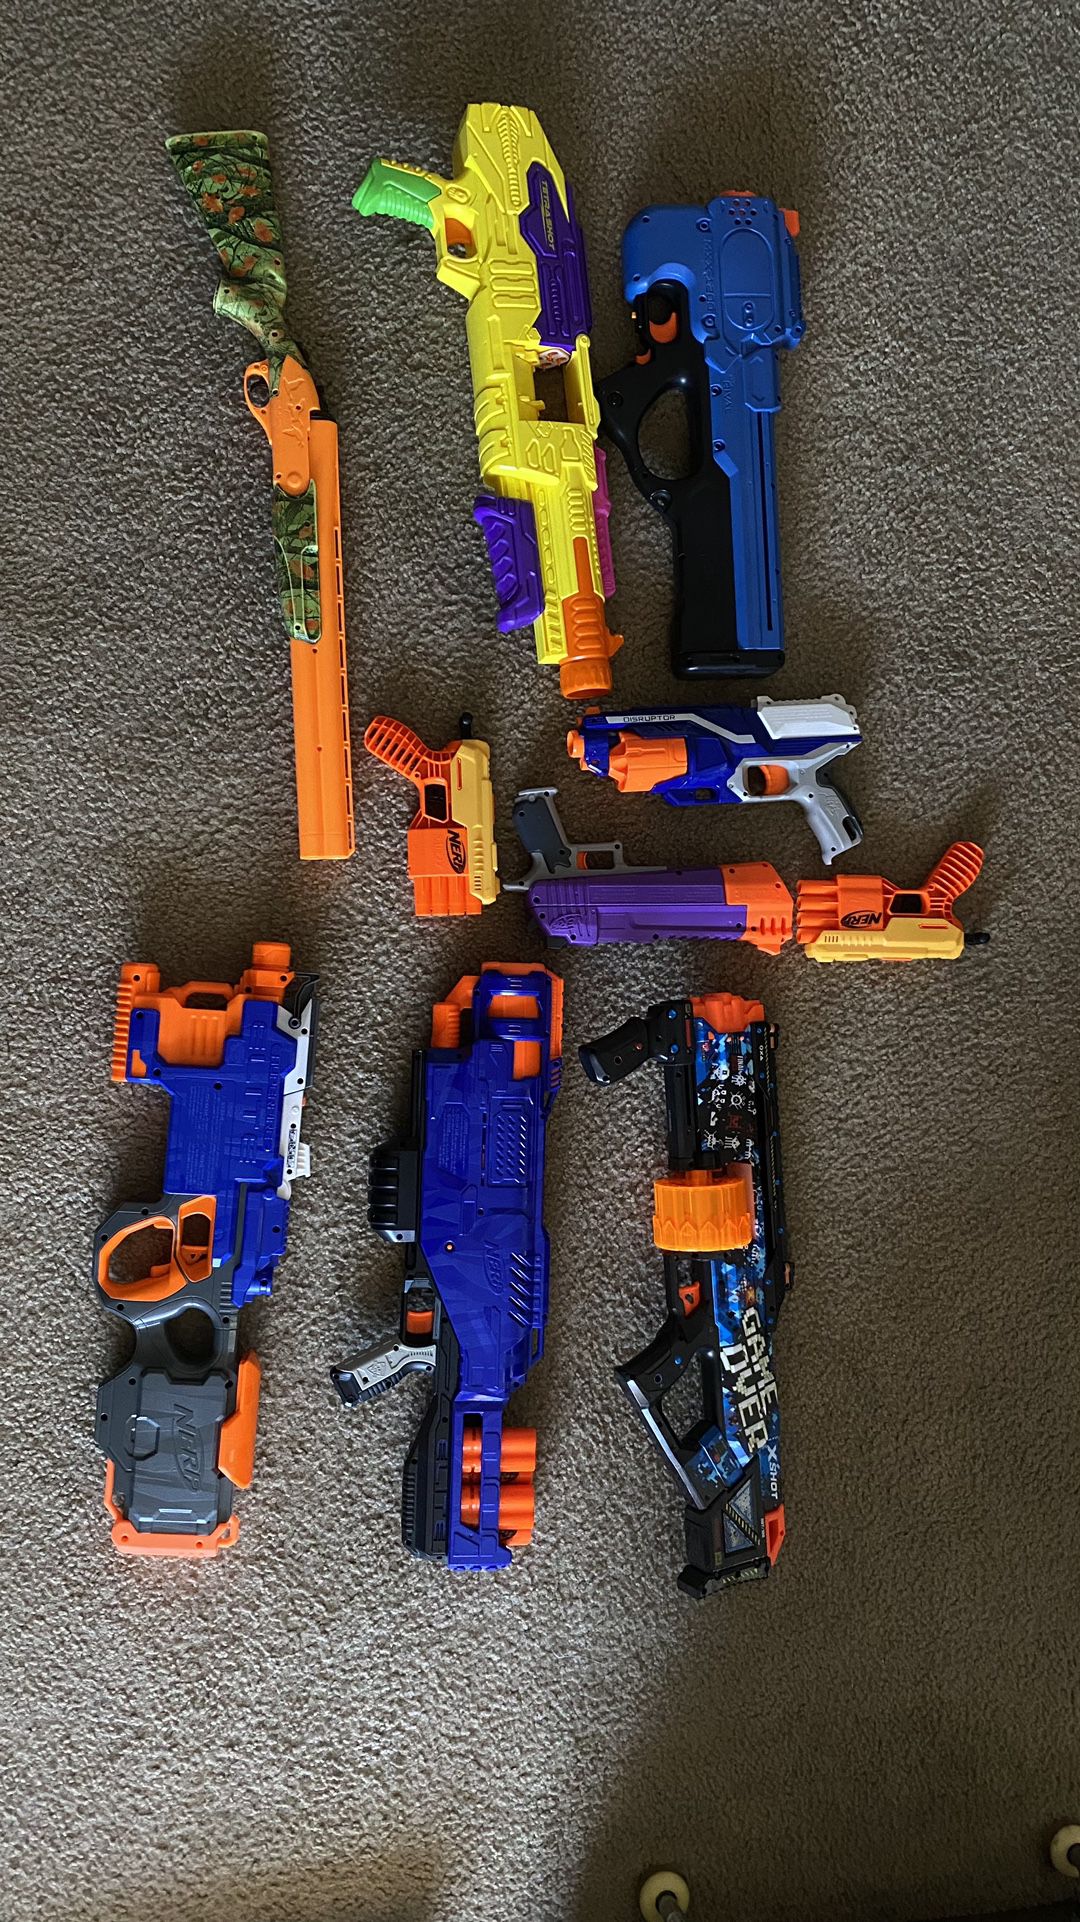 Kids Nerf Guns